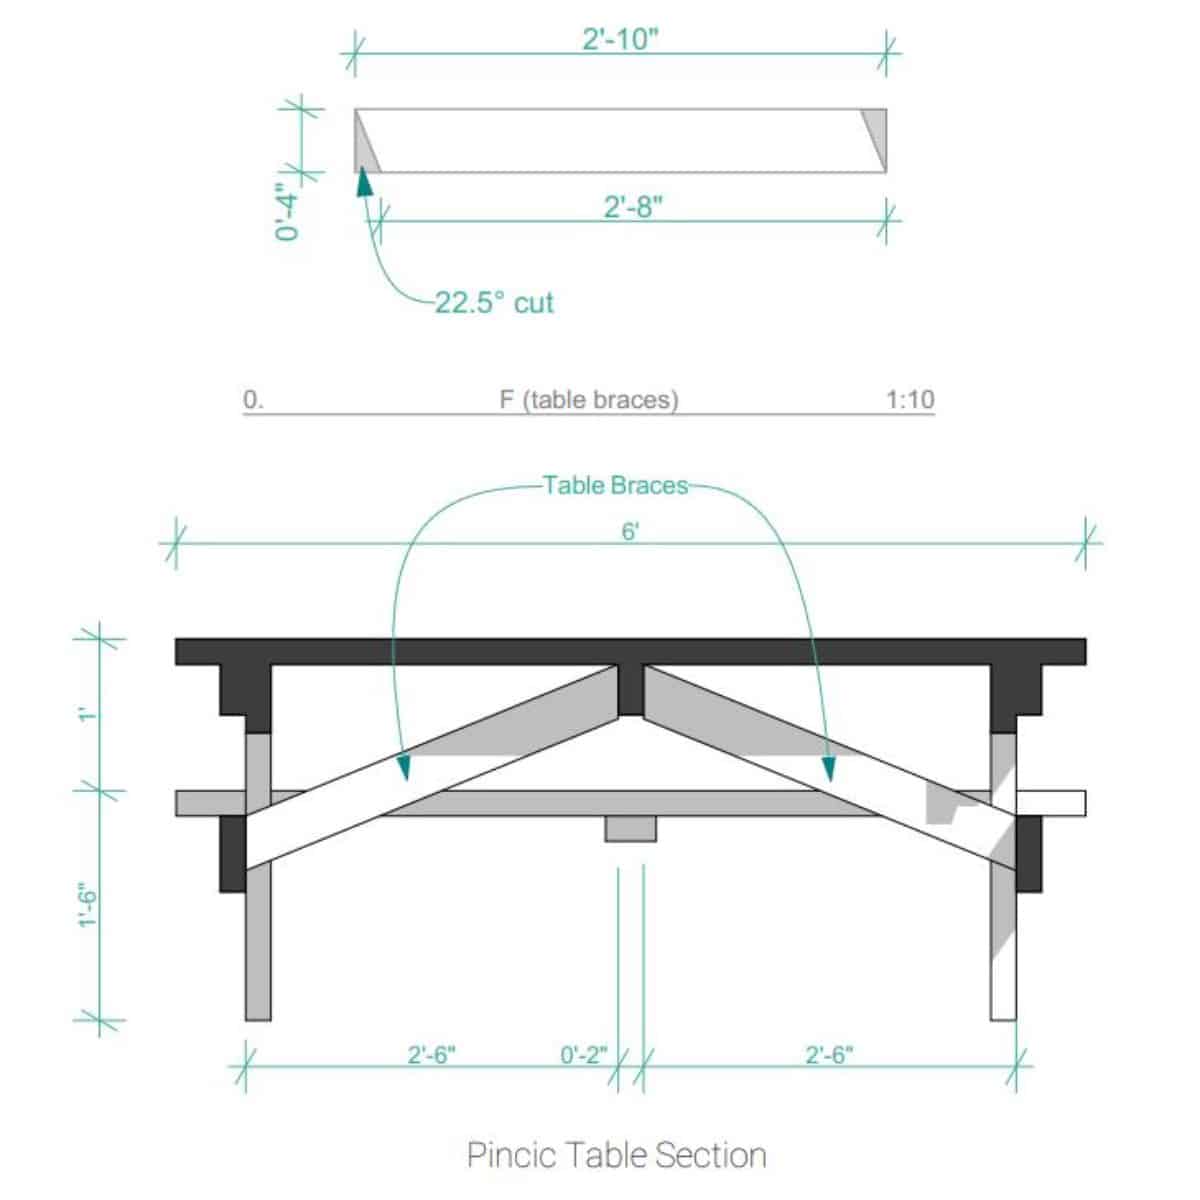 Cómo construir una mesa de picnic DIY - Paso 5: Instalar los refuerzos de la mesa